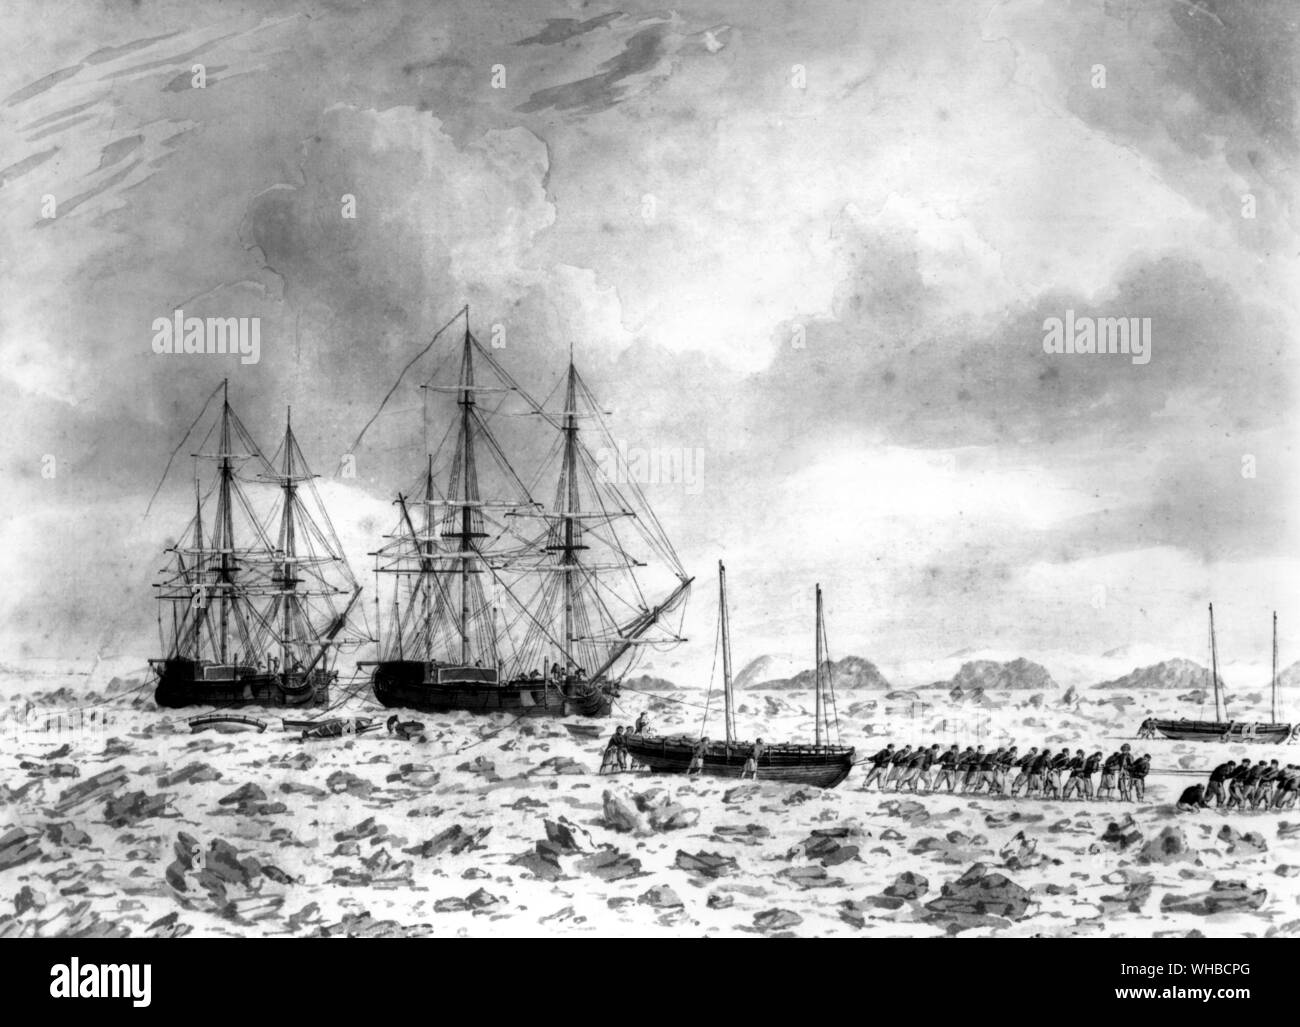 Carcasse et de chevaux pris dans la glace sur l'expédition arctique dans laquelle le jeune Nelson a pris part Banque D'Images